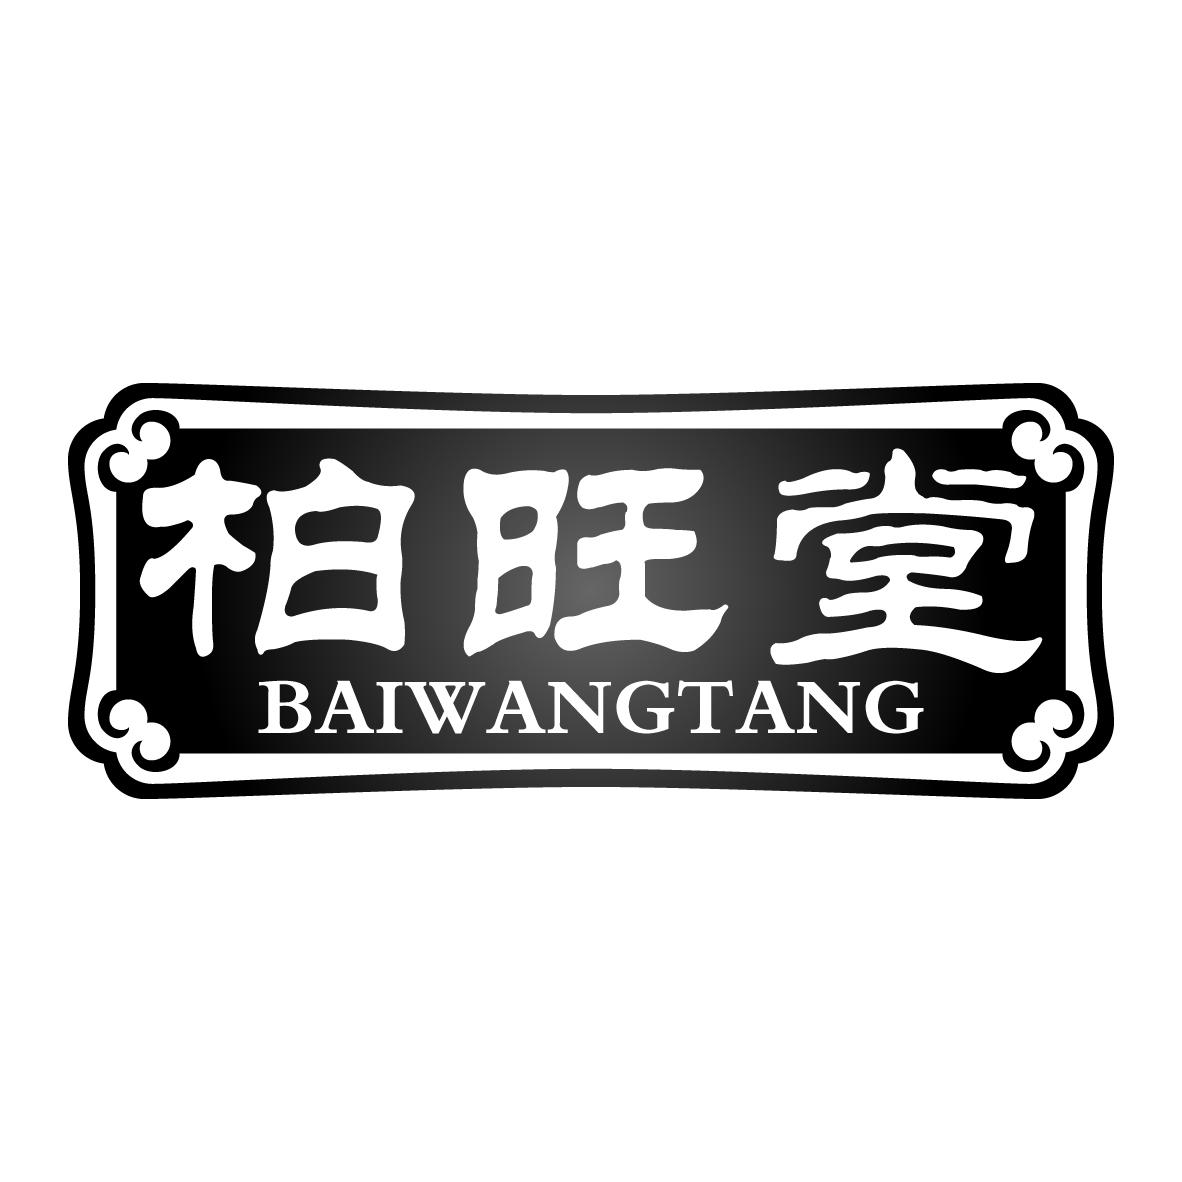 柏旺堂BAIWANGTANG